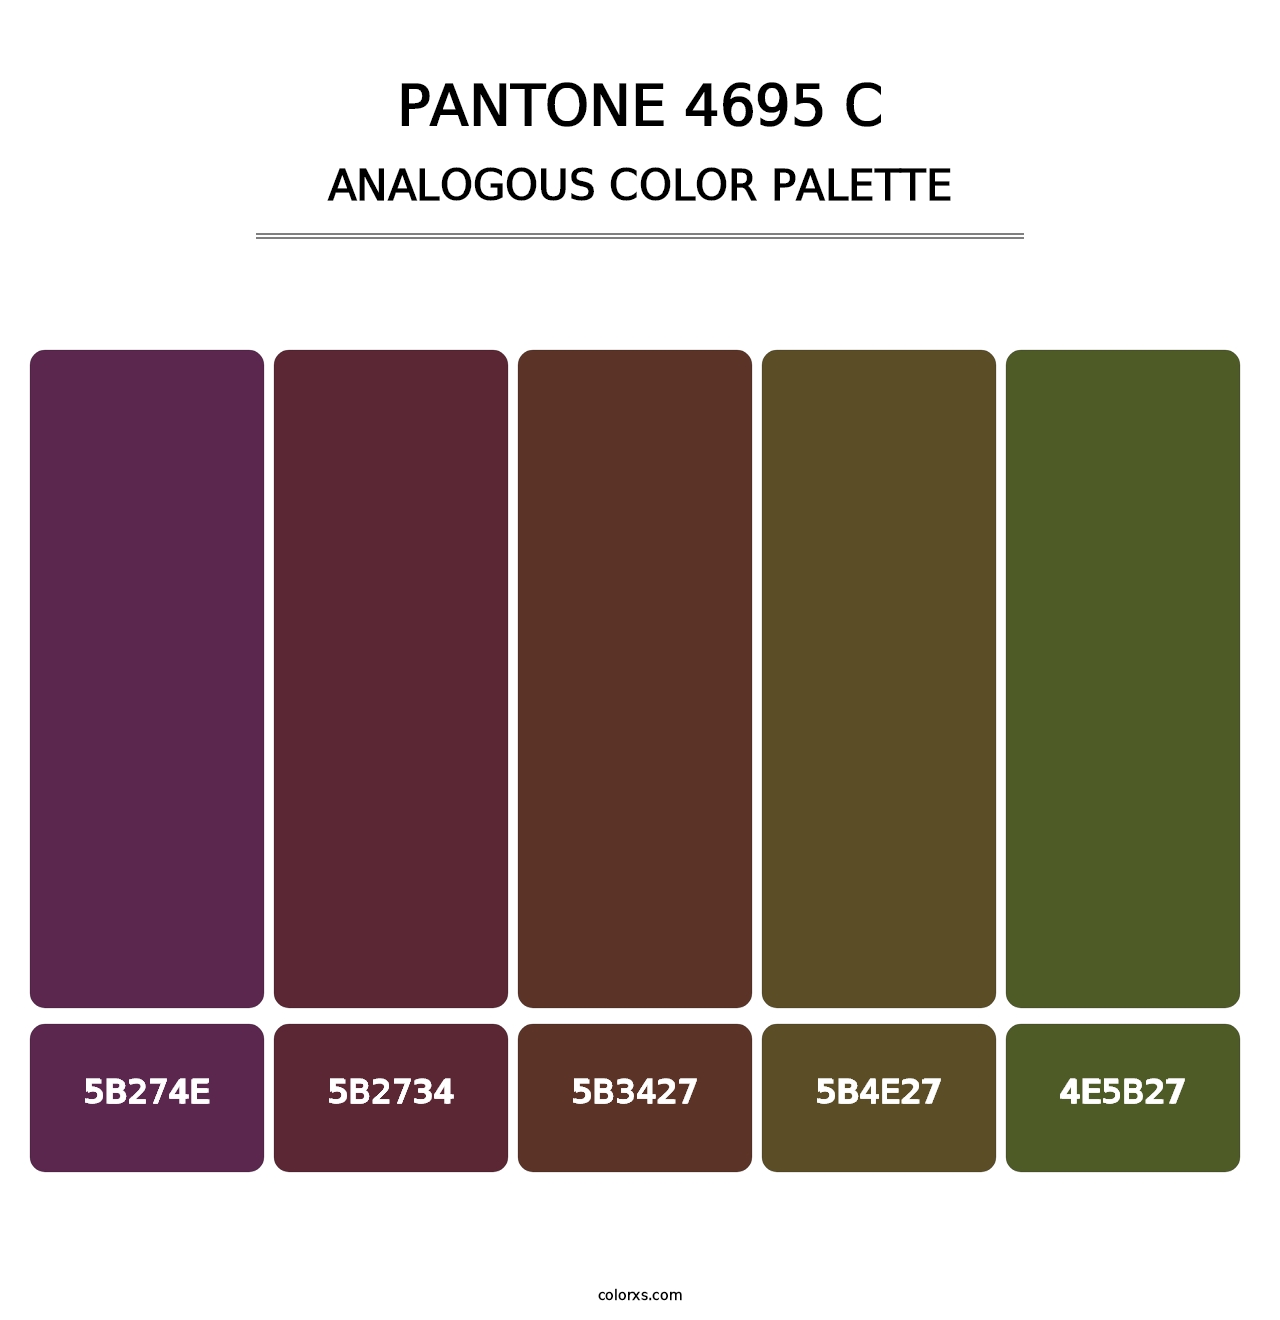 PANTONE 4695 C - Analogous Color Palette